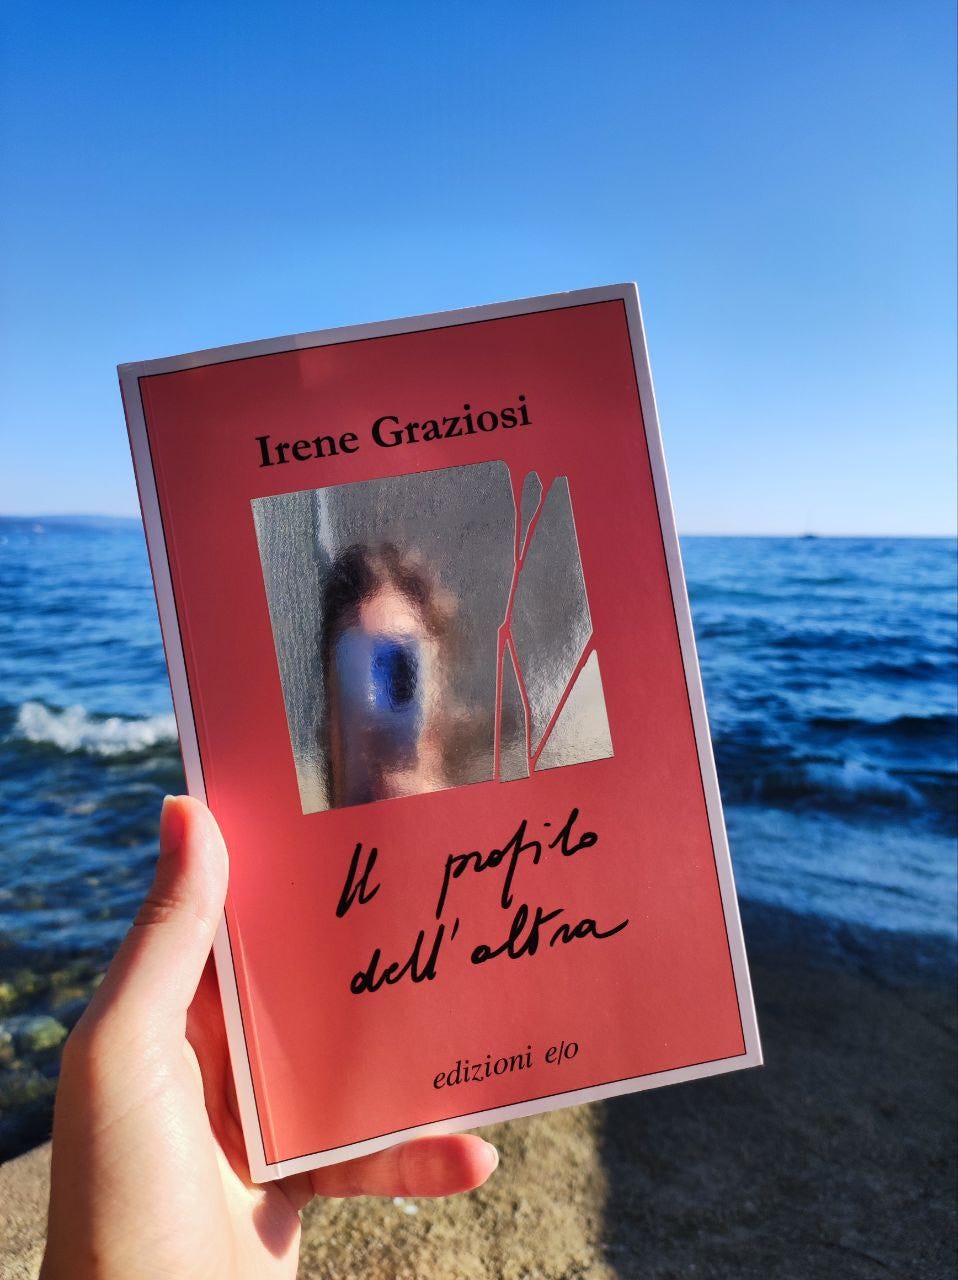 Sullo sfondo il mare, al centro una mano tiene un libro di colore rosa. Il titolo è "Il profilo dell'altra" e l'autrice è Irene Graziosi. Sulla copertina c'è un piccolo specchio.